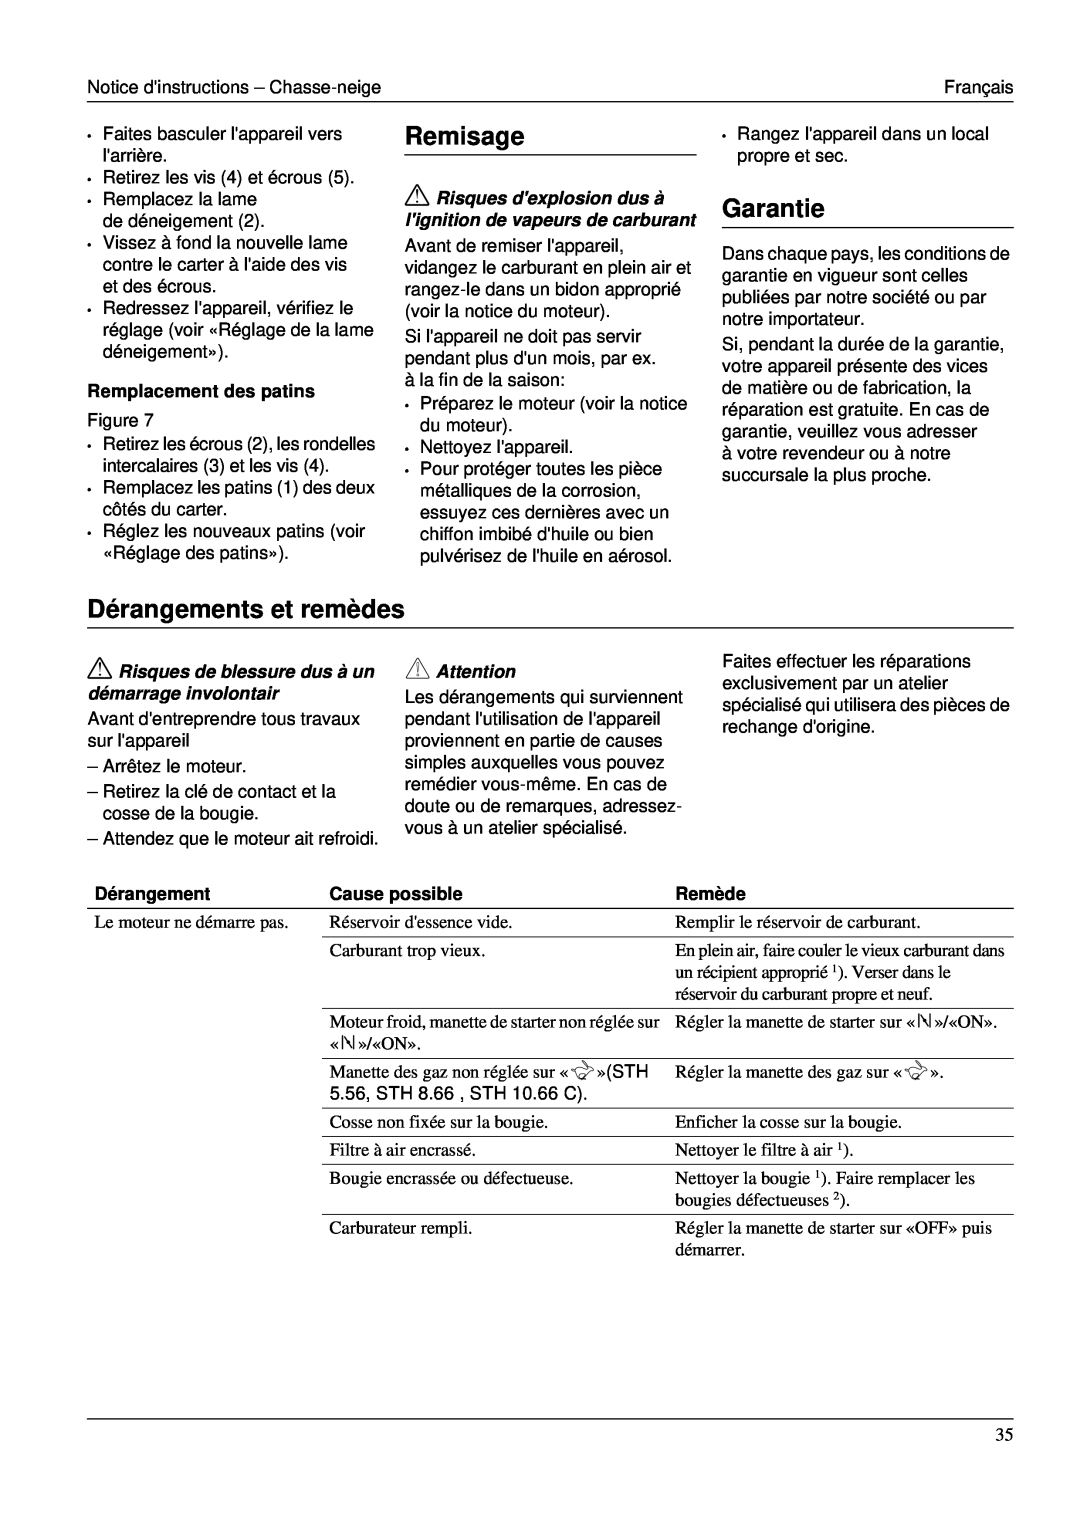 Karcher STH 953 manual Remisage, Dérangements et remèdes, Garantie, Remplacement des patins, Cause possible, Remède 